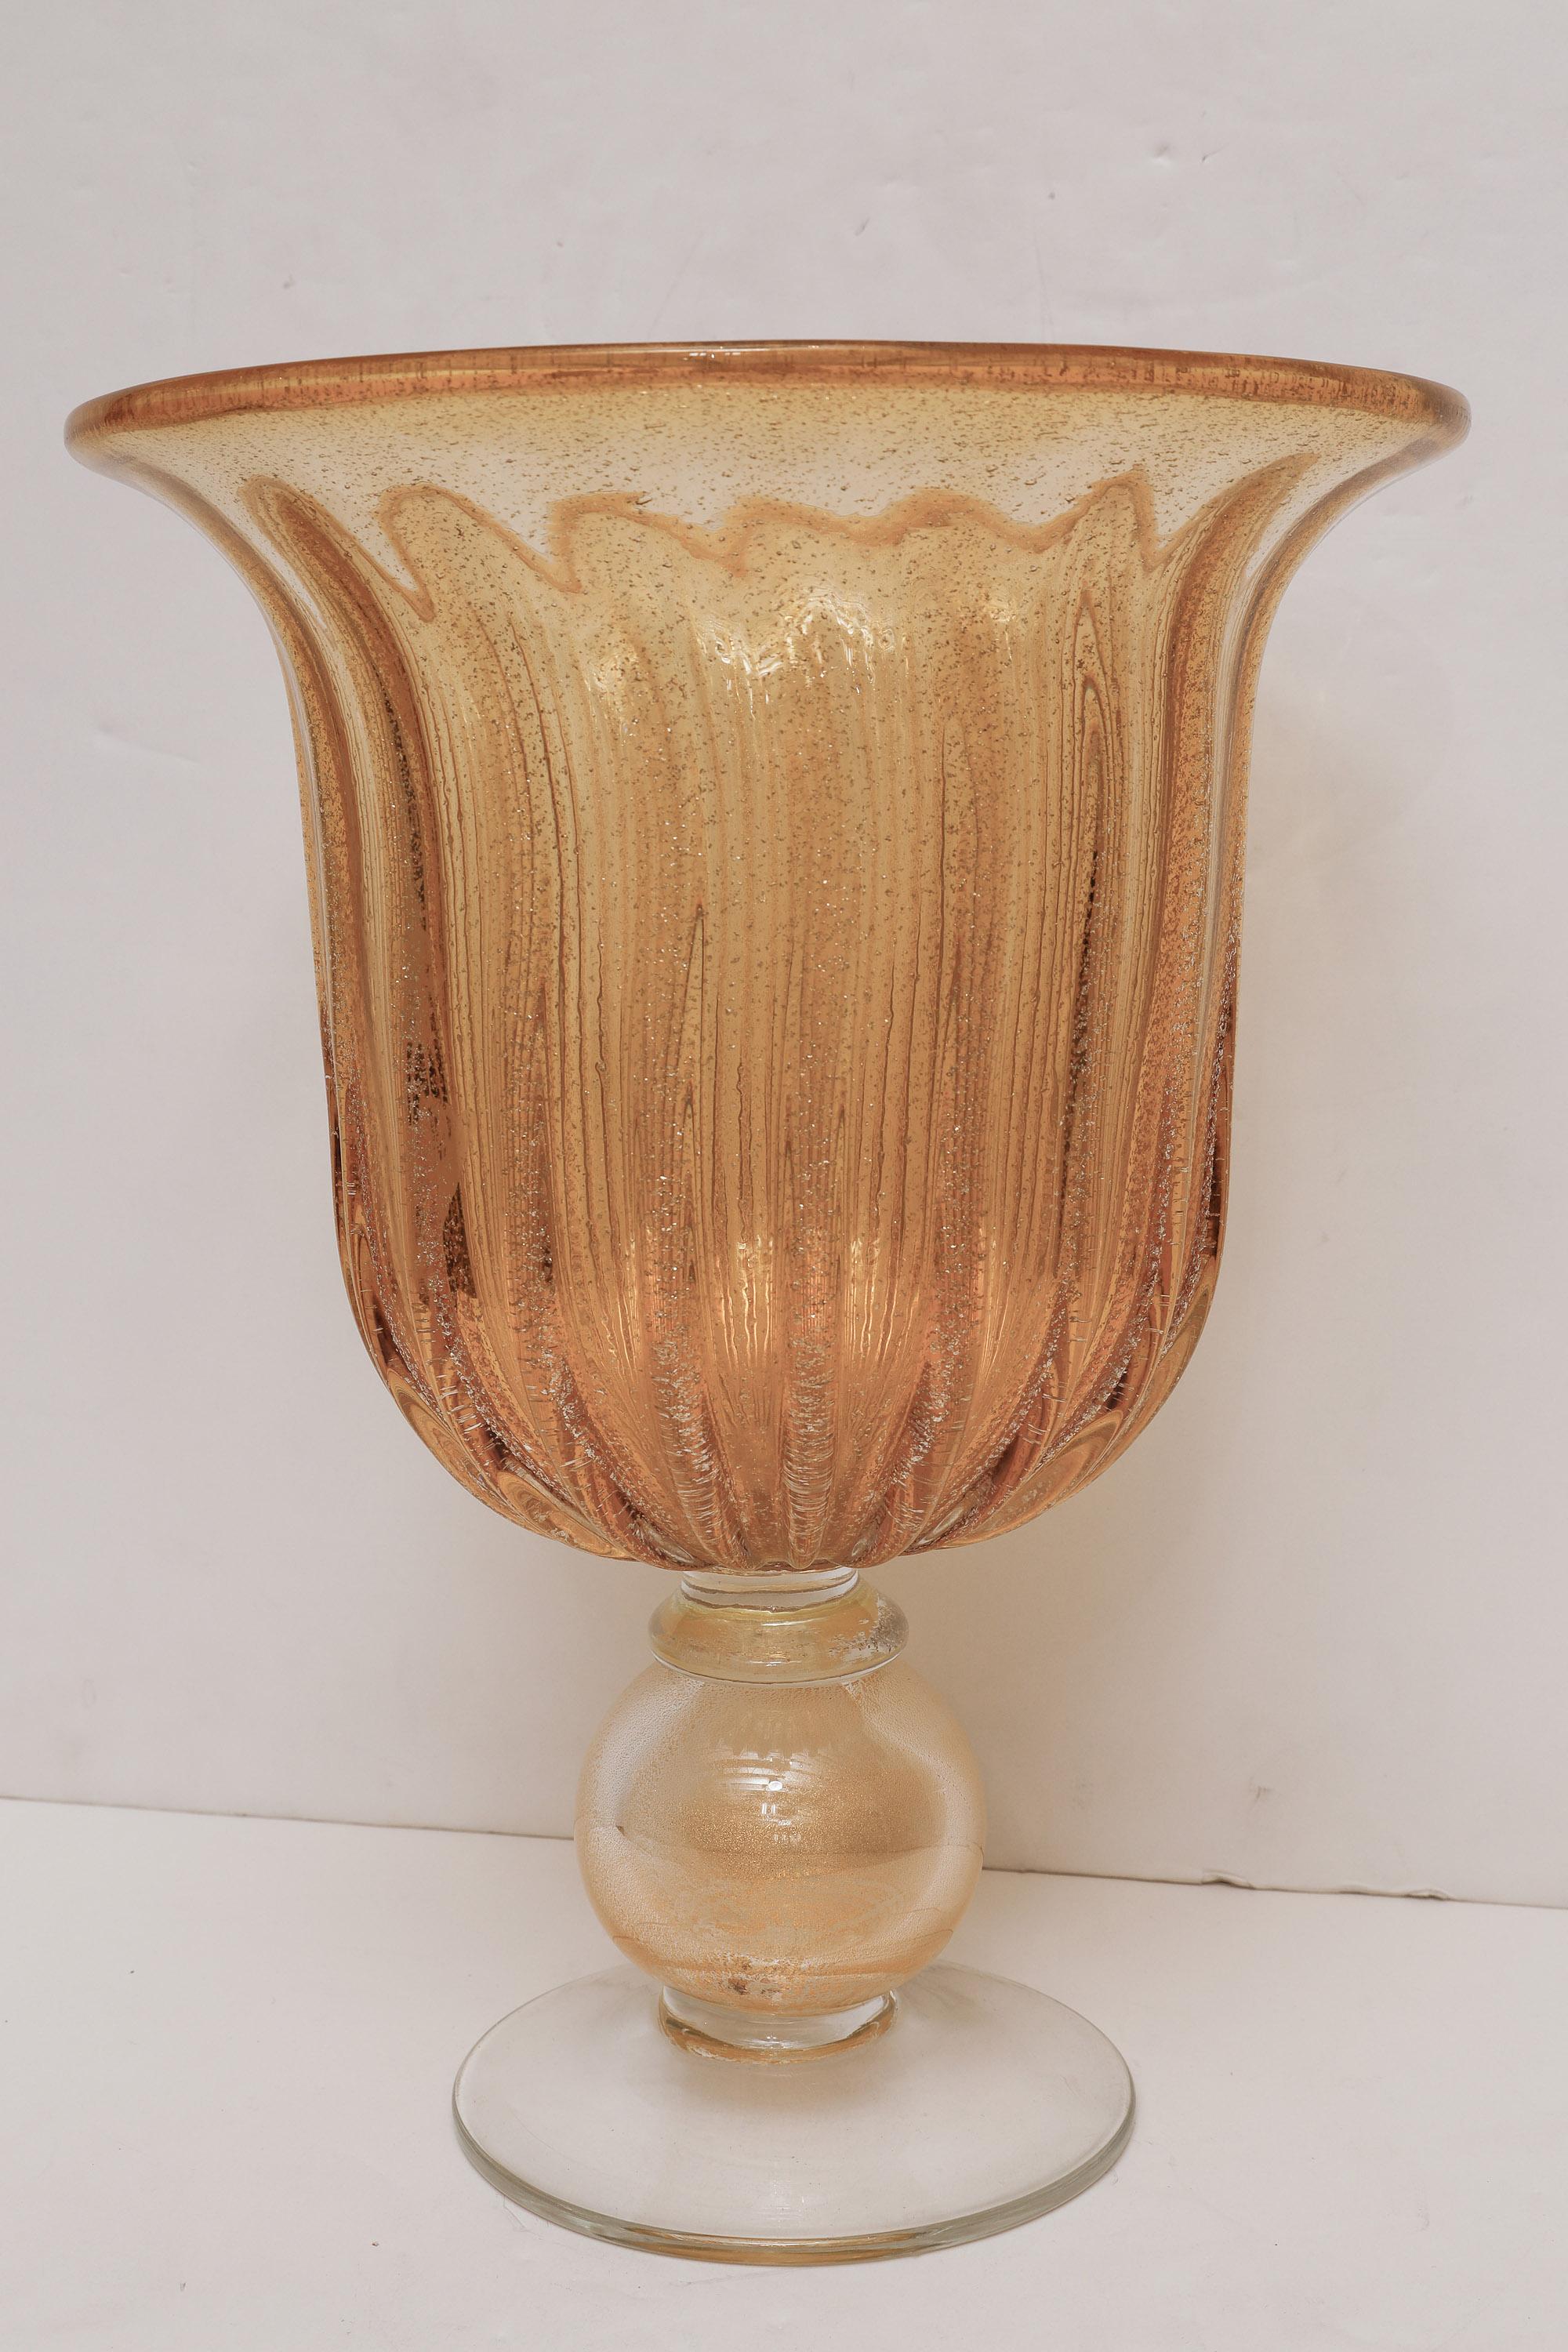 Magnifique vase cannelé soufflé à la main de Murano dans le style d'Angelo Seguso, exécuté en verre ambré et transparent avec de la poussière d'or et des inclusions scintillantes.
De grande taille, il s'agit d'une pièce maîtresse.